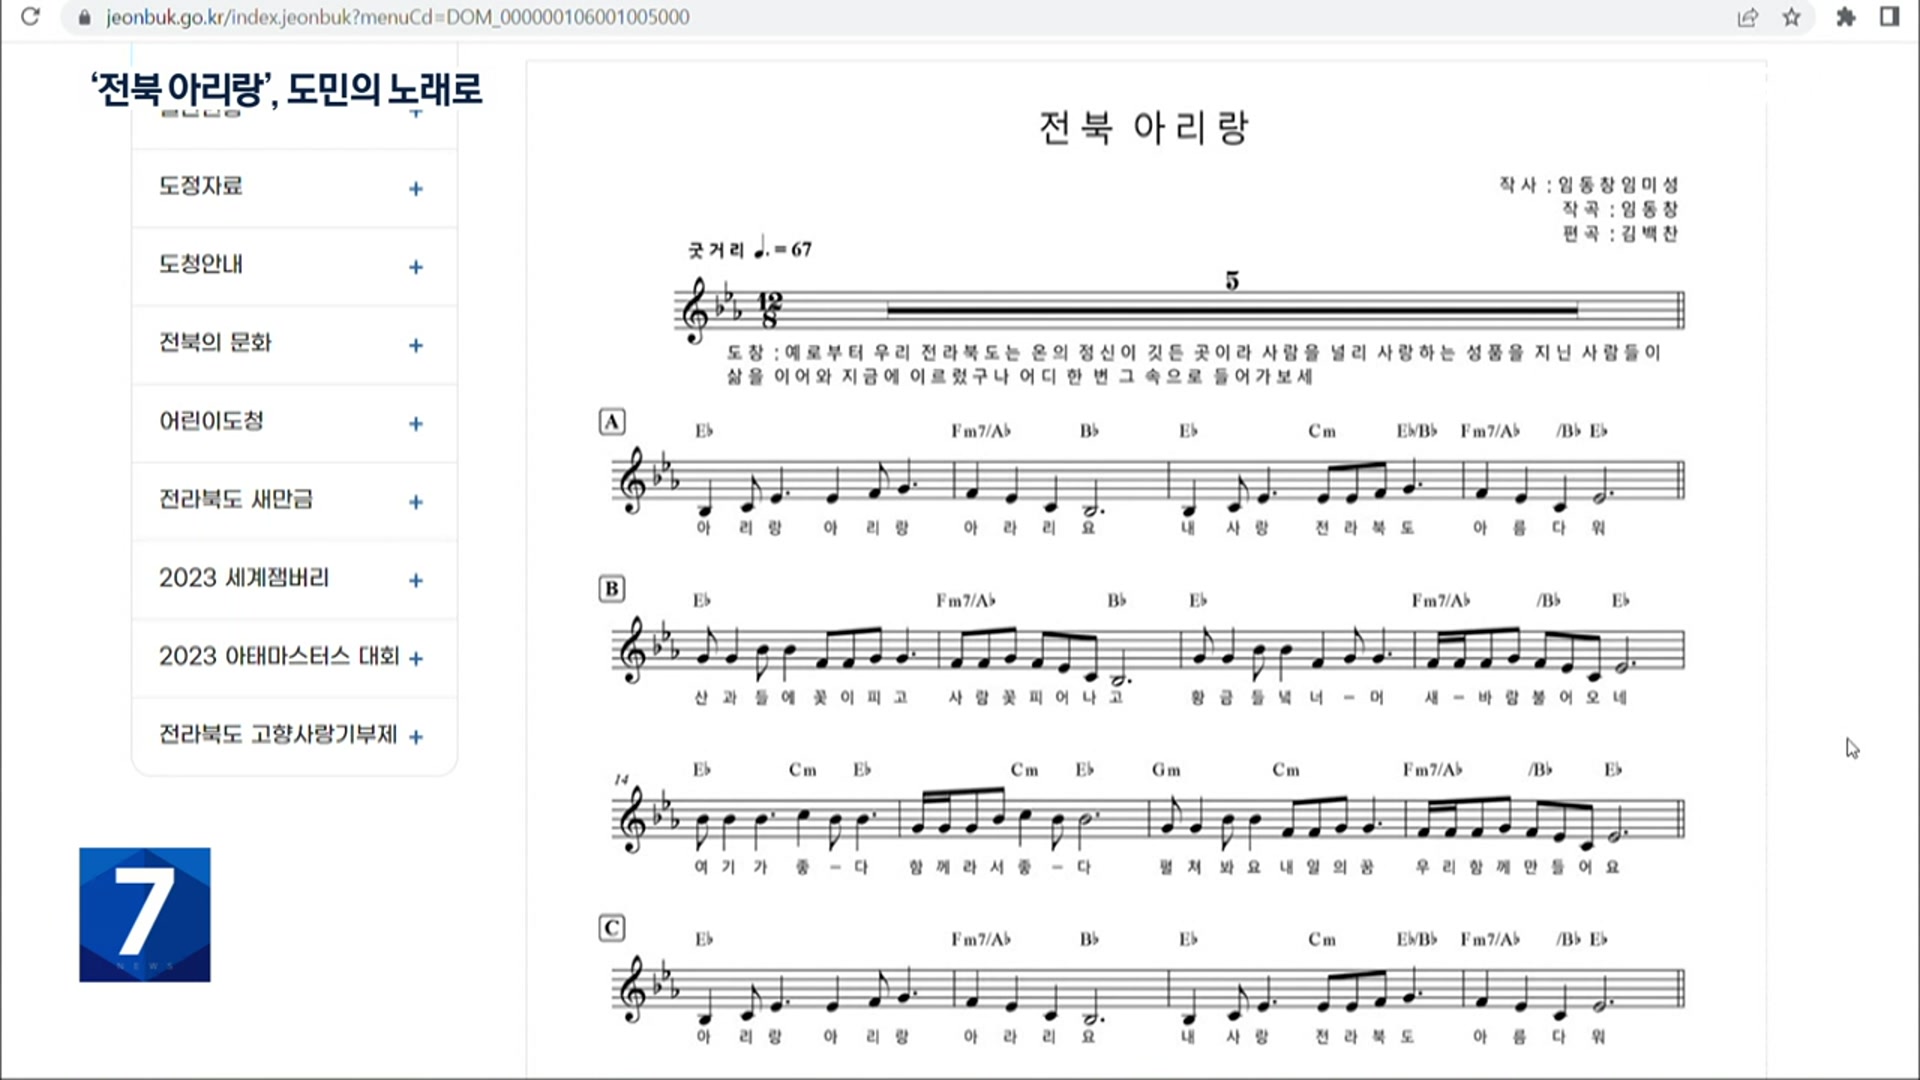 전북 도민의 노래, ‘전북 아리랑’으로 재탄생